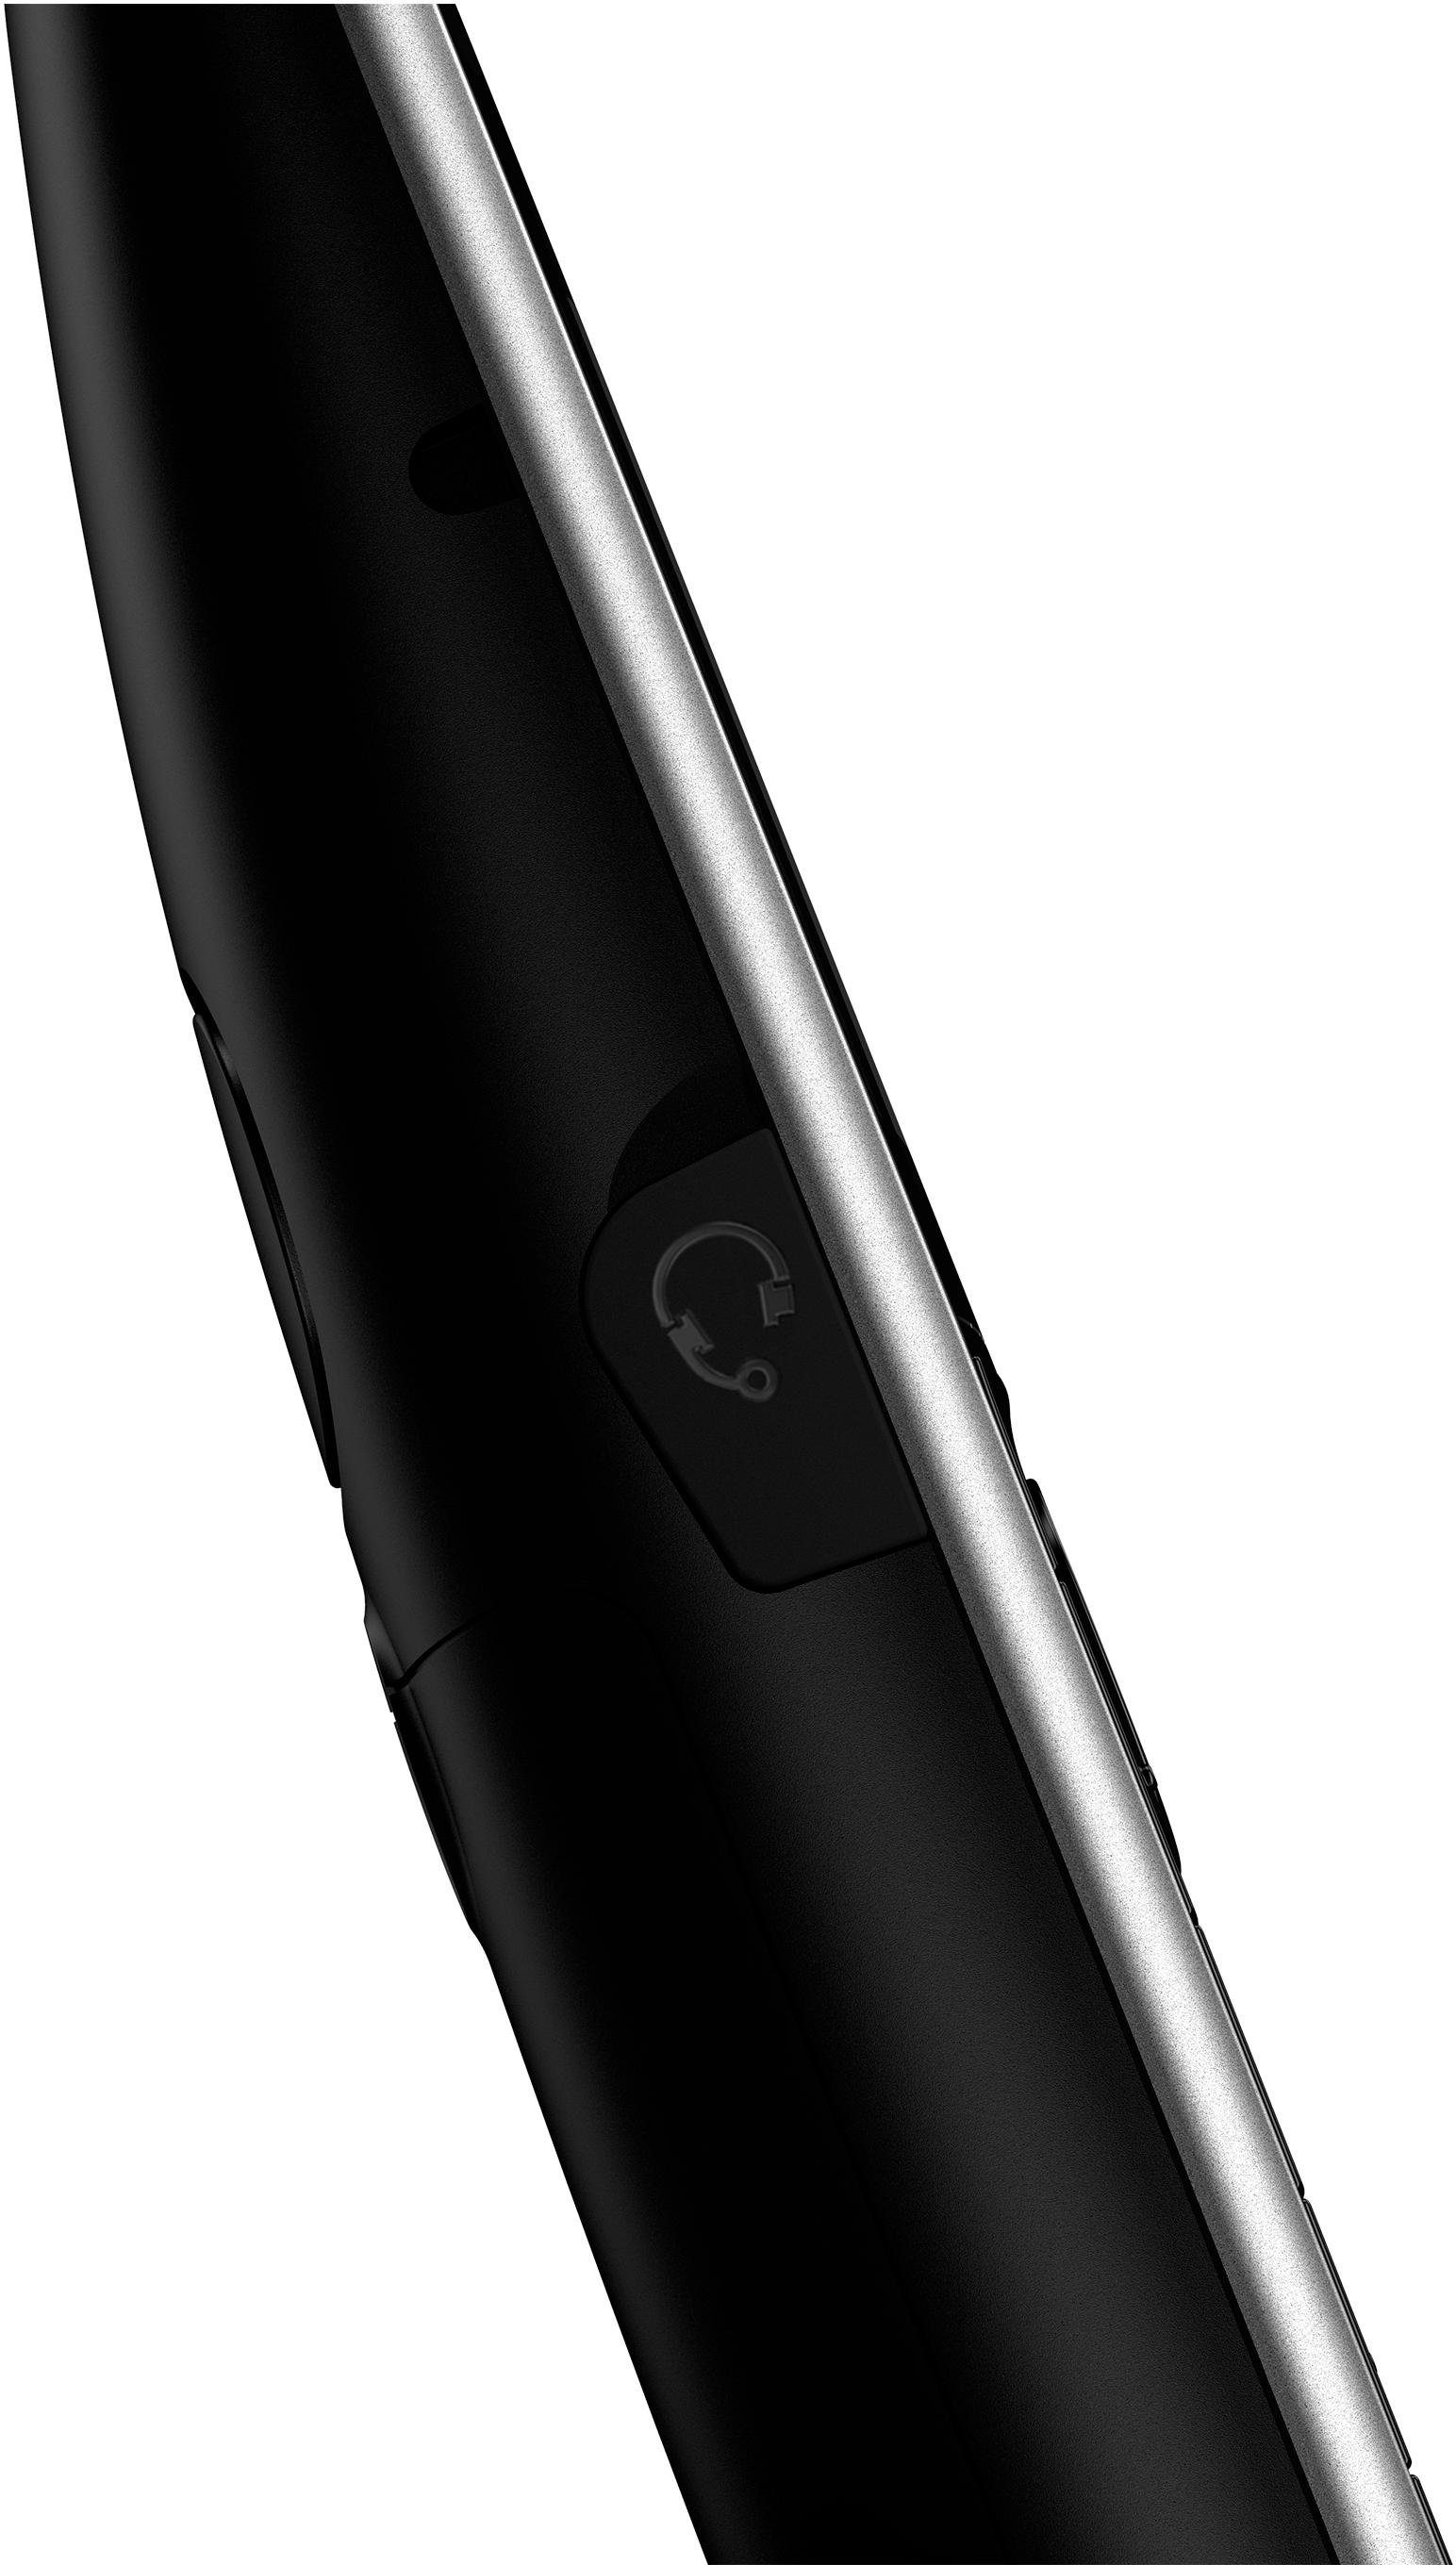 Panasonic KX-TGJ320 Schnurloses DECT-Telefon 1, Anrufbeantworter, Weckfunktion, Freisprechen) schwarz (Mobilteile: mit